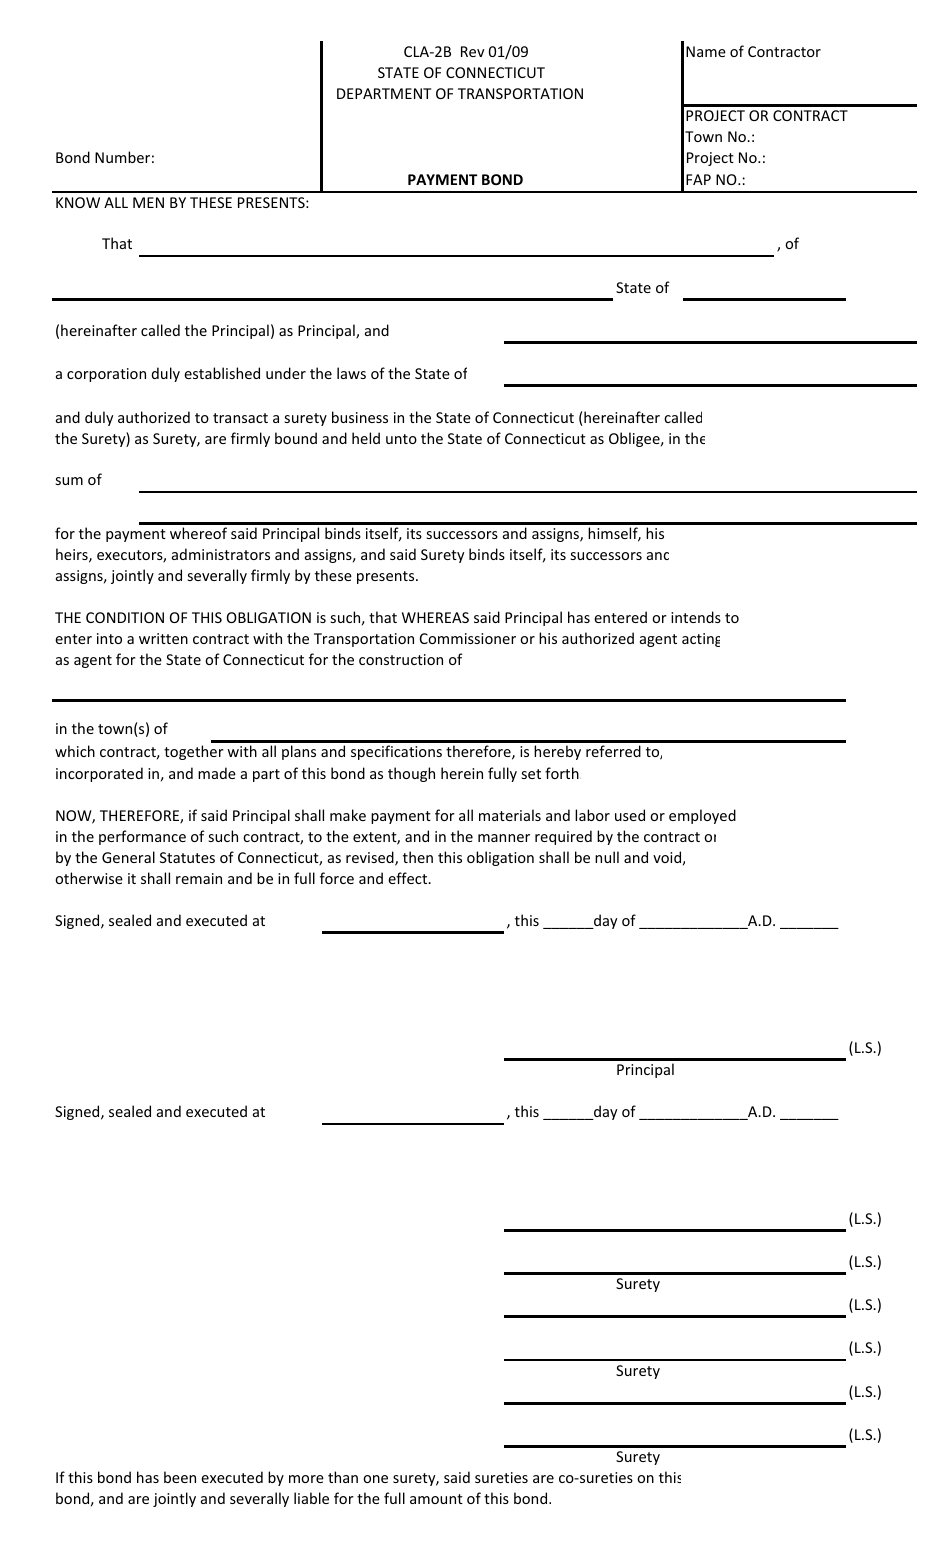 Form CLA-2B Payment Bond - Connecticut, Page 1